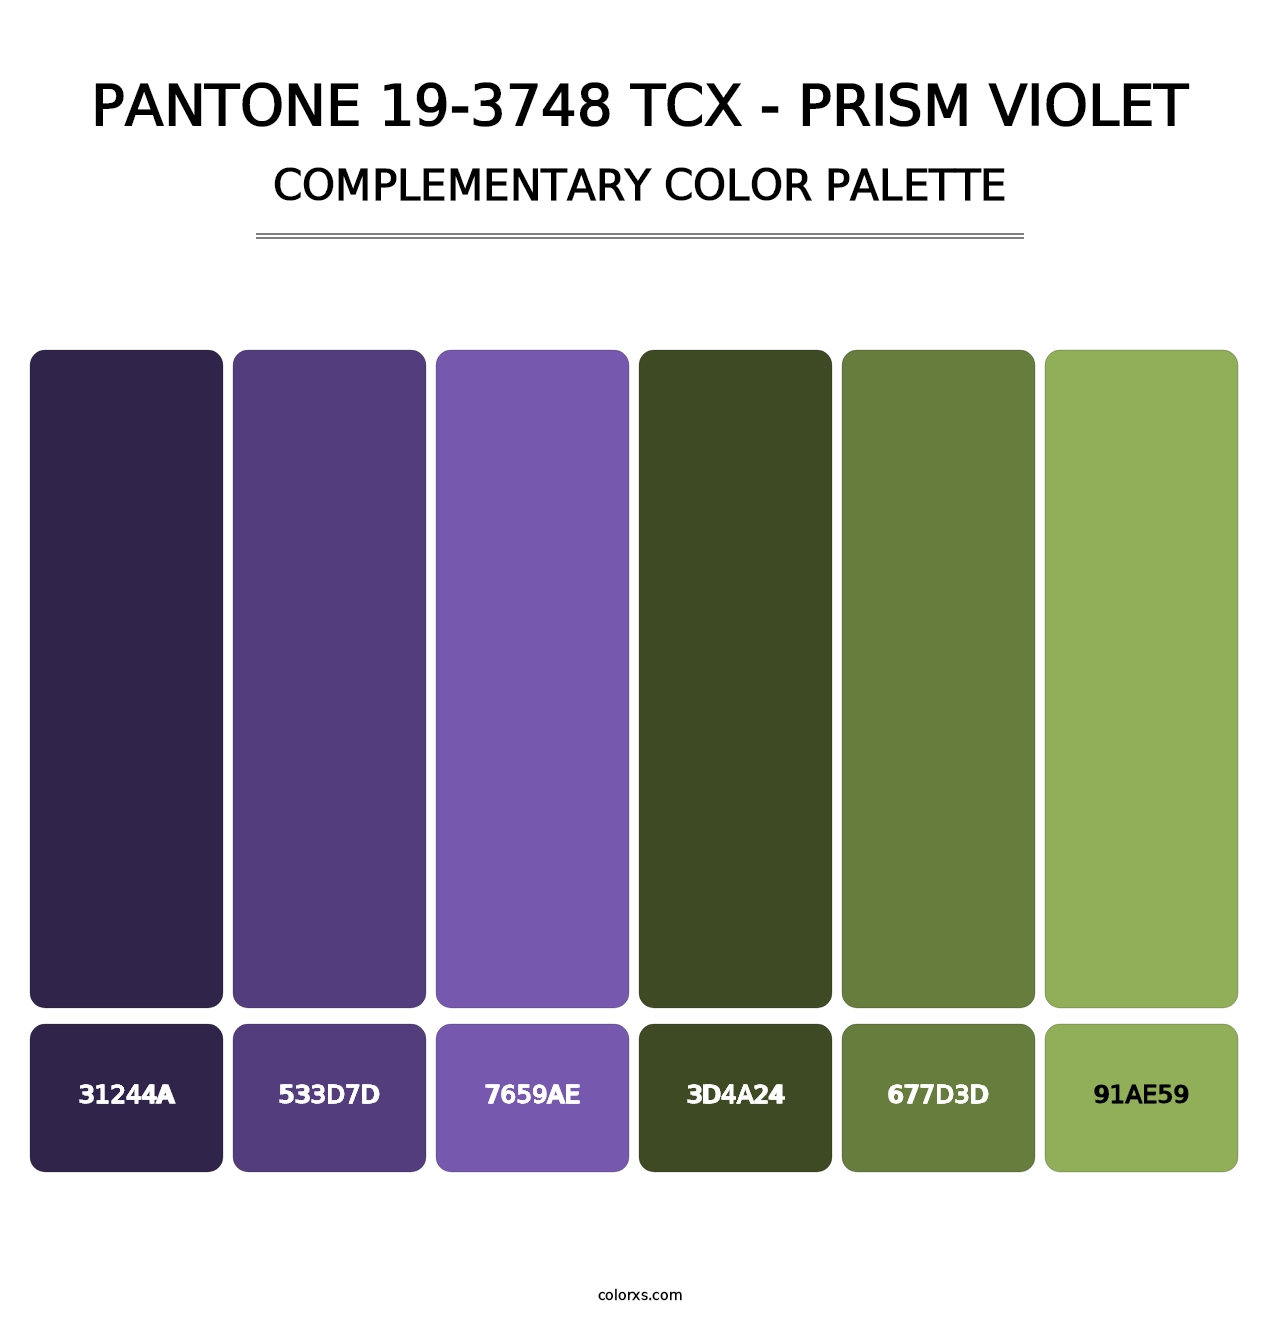 PANTONE 19-3748 TCX - Prism Violet - Complementary Color Palette